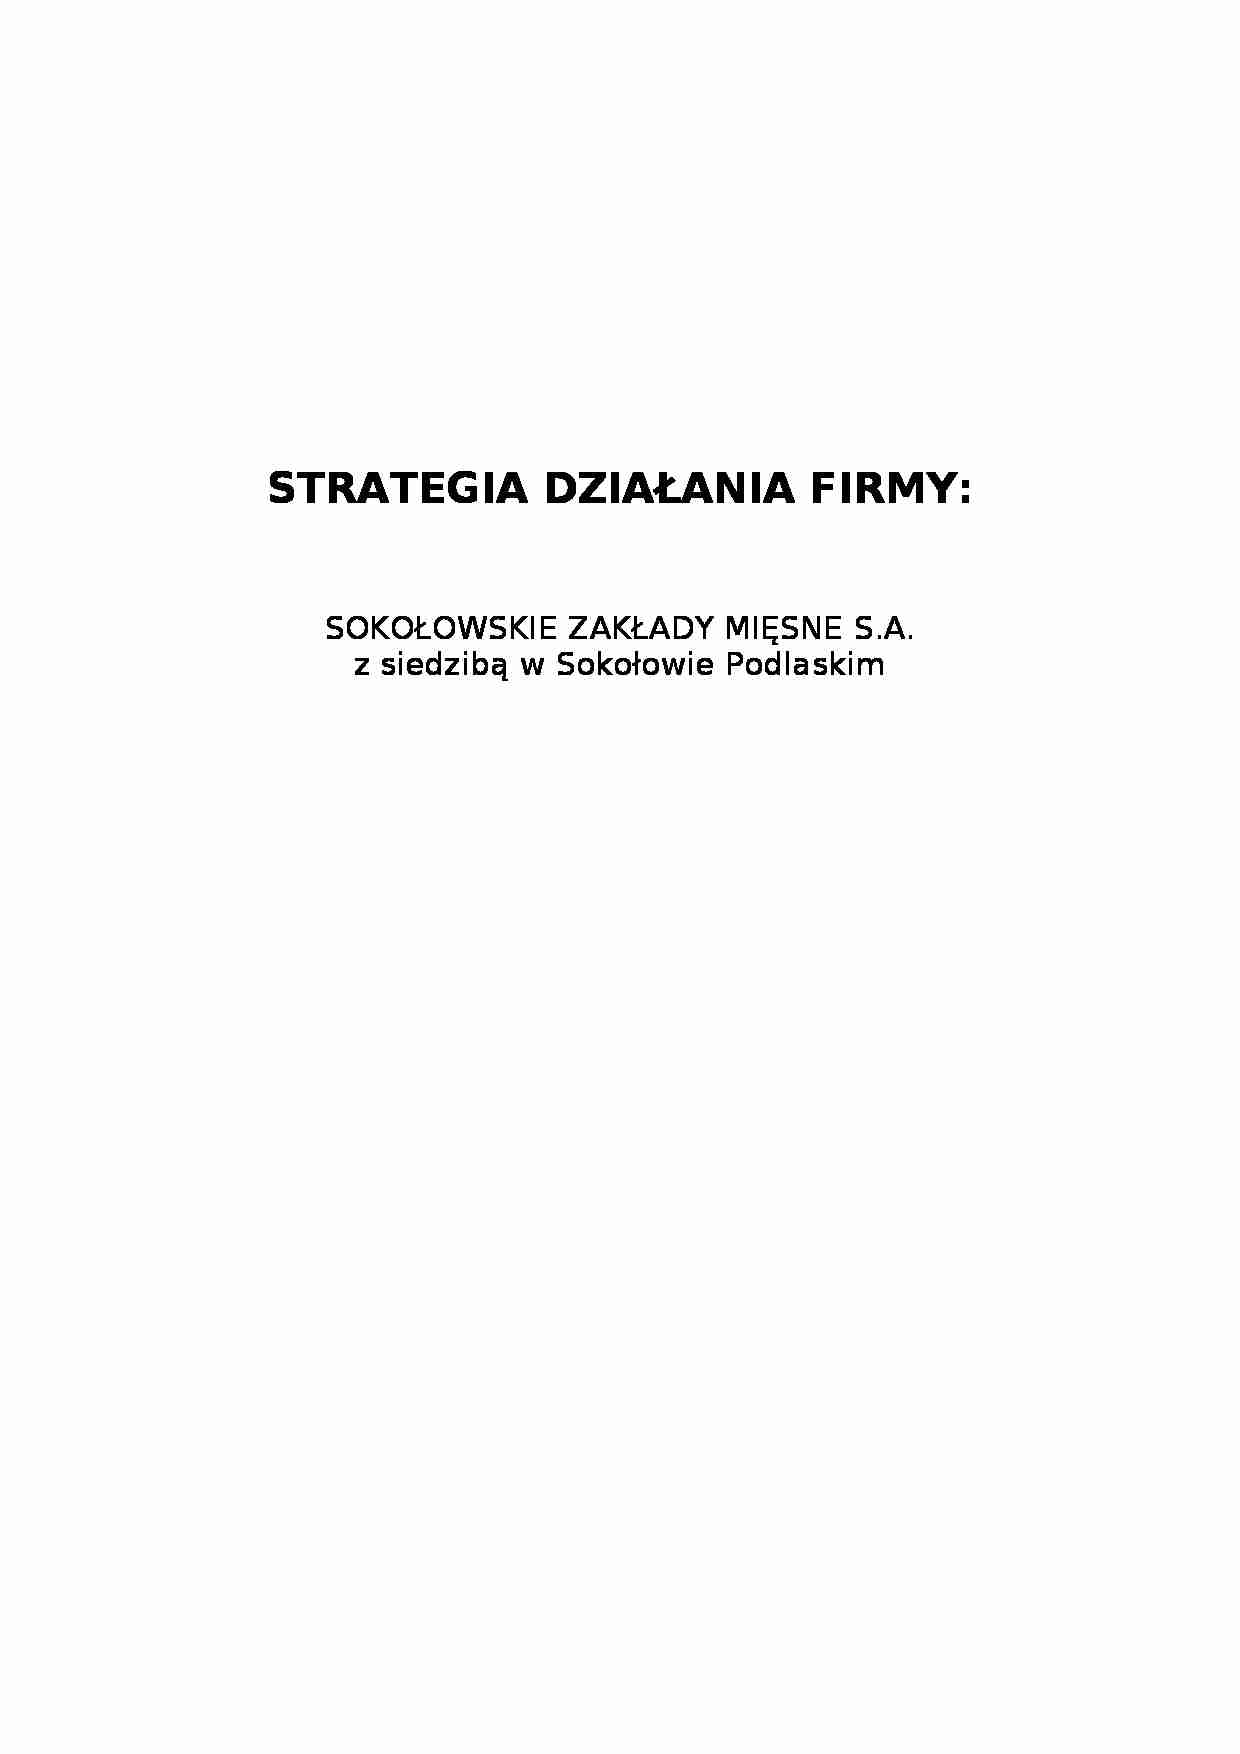 Strategia działania firmy - zakłady mięsne - strona 1